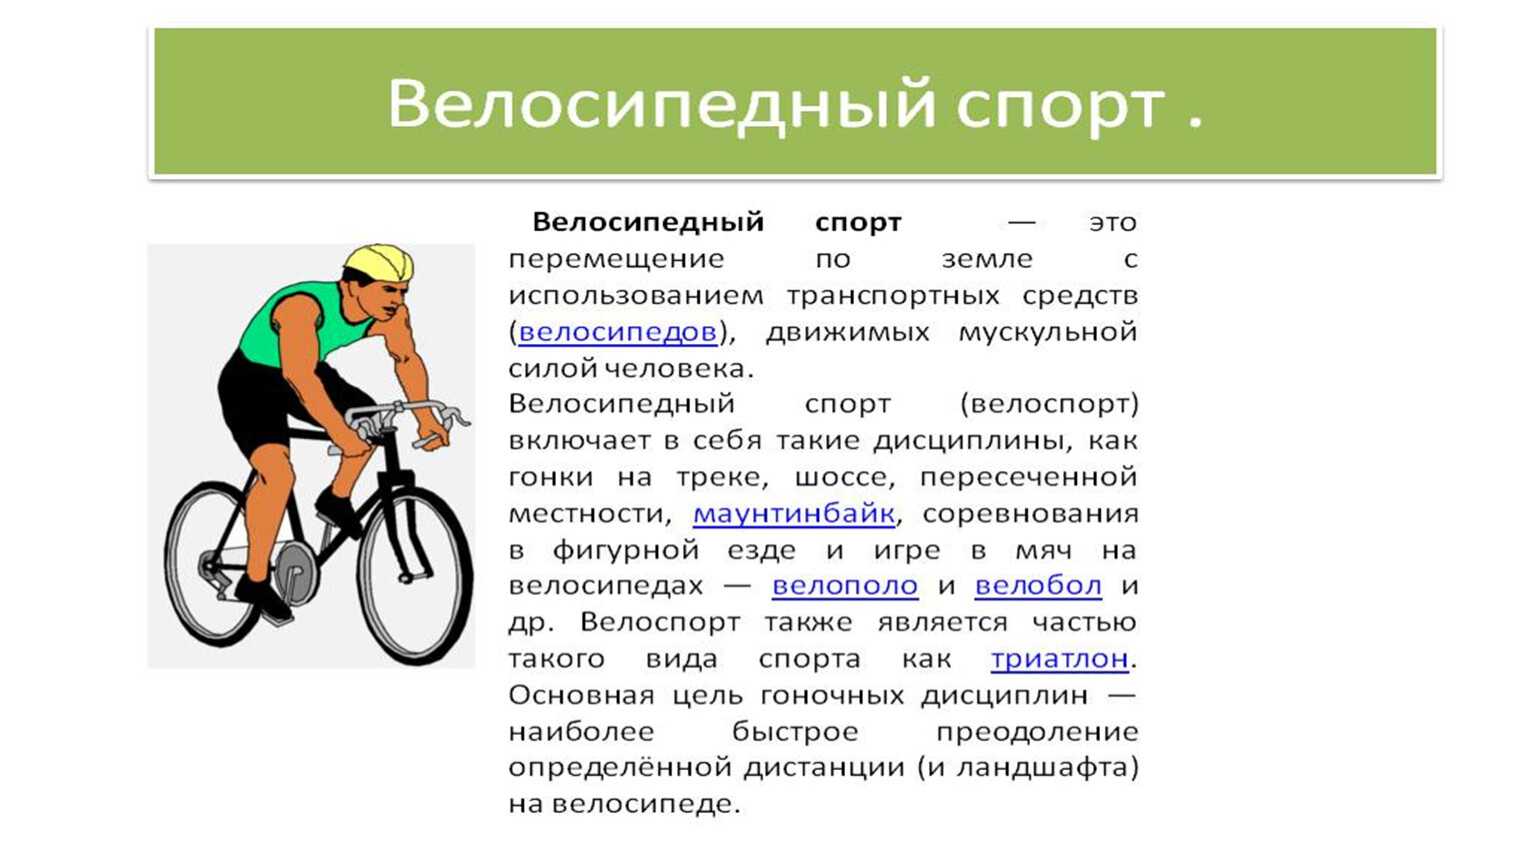 У каждого велосипеда по 2 колеса. Велоспорт это кратко для детей. Виды велосипедов. Доклад на тему велосипедный спорт. Велоспорт описание.